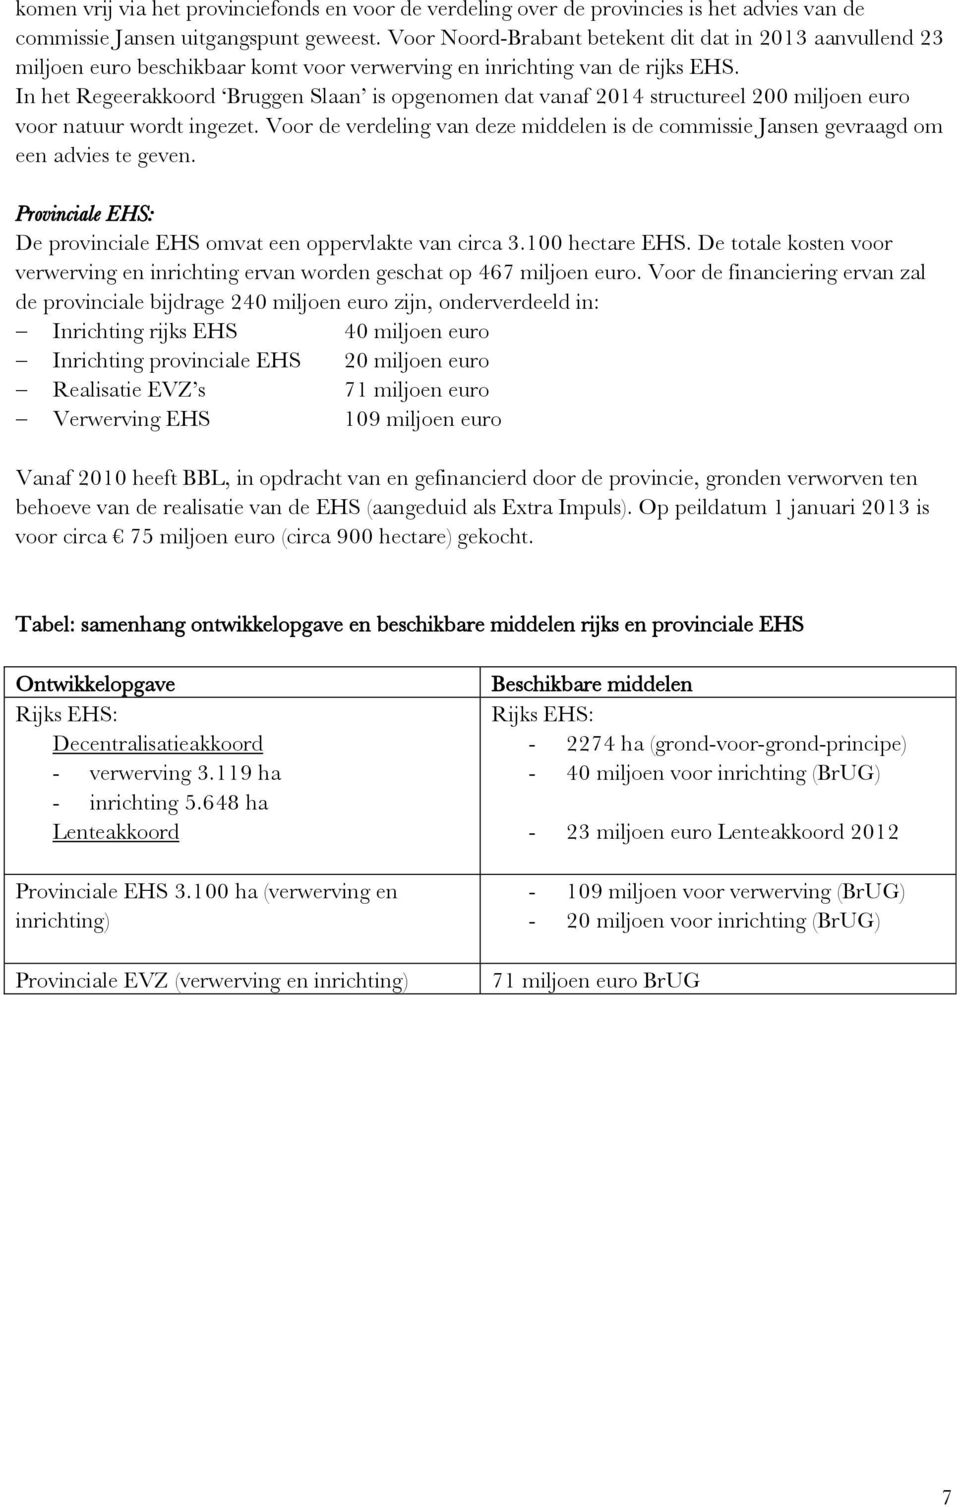 In het Regeerakkoord Bruggen Slaan is opgenomen dat vanaf 2014 structureel 200 miljoen euro voor natuur wordt ingezet.